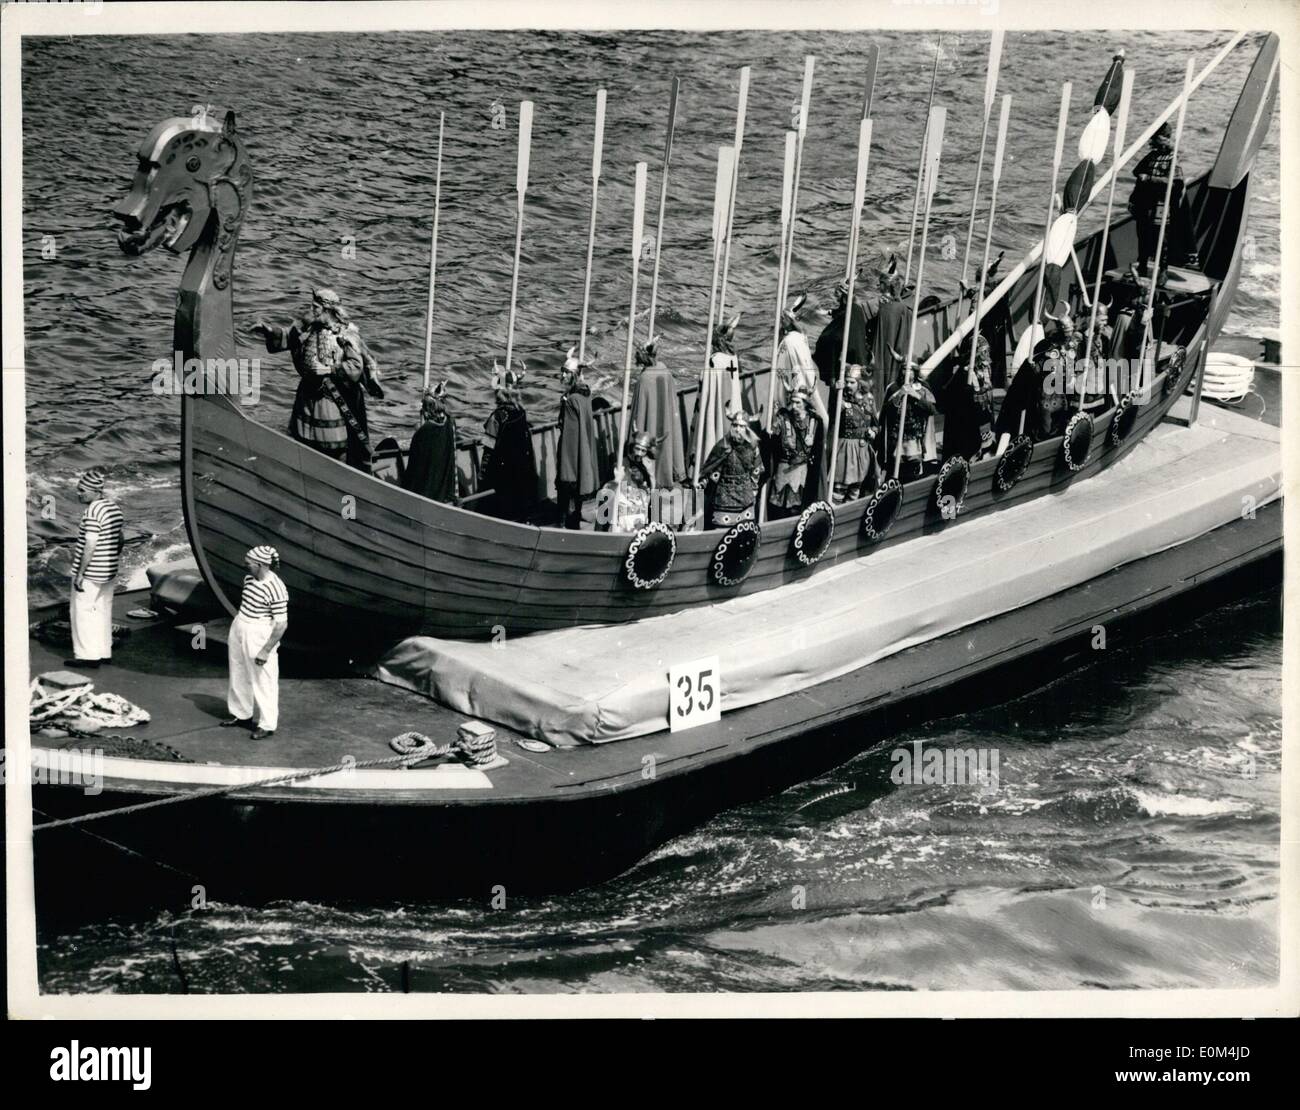 7. Juli 1953 - Royal Krönung Fluss Festzug auf Themse: '' The Vikings'' Foto zeigt das Tableau für die Wikinger (Periode 1013) mit König Olaf und die norwegische Men at Arms. Wie von Hungerford Bridge-während der Festspiele auf der Themse heute Morgen gesehen. Stockfoto